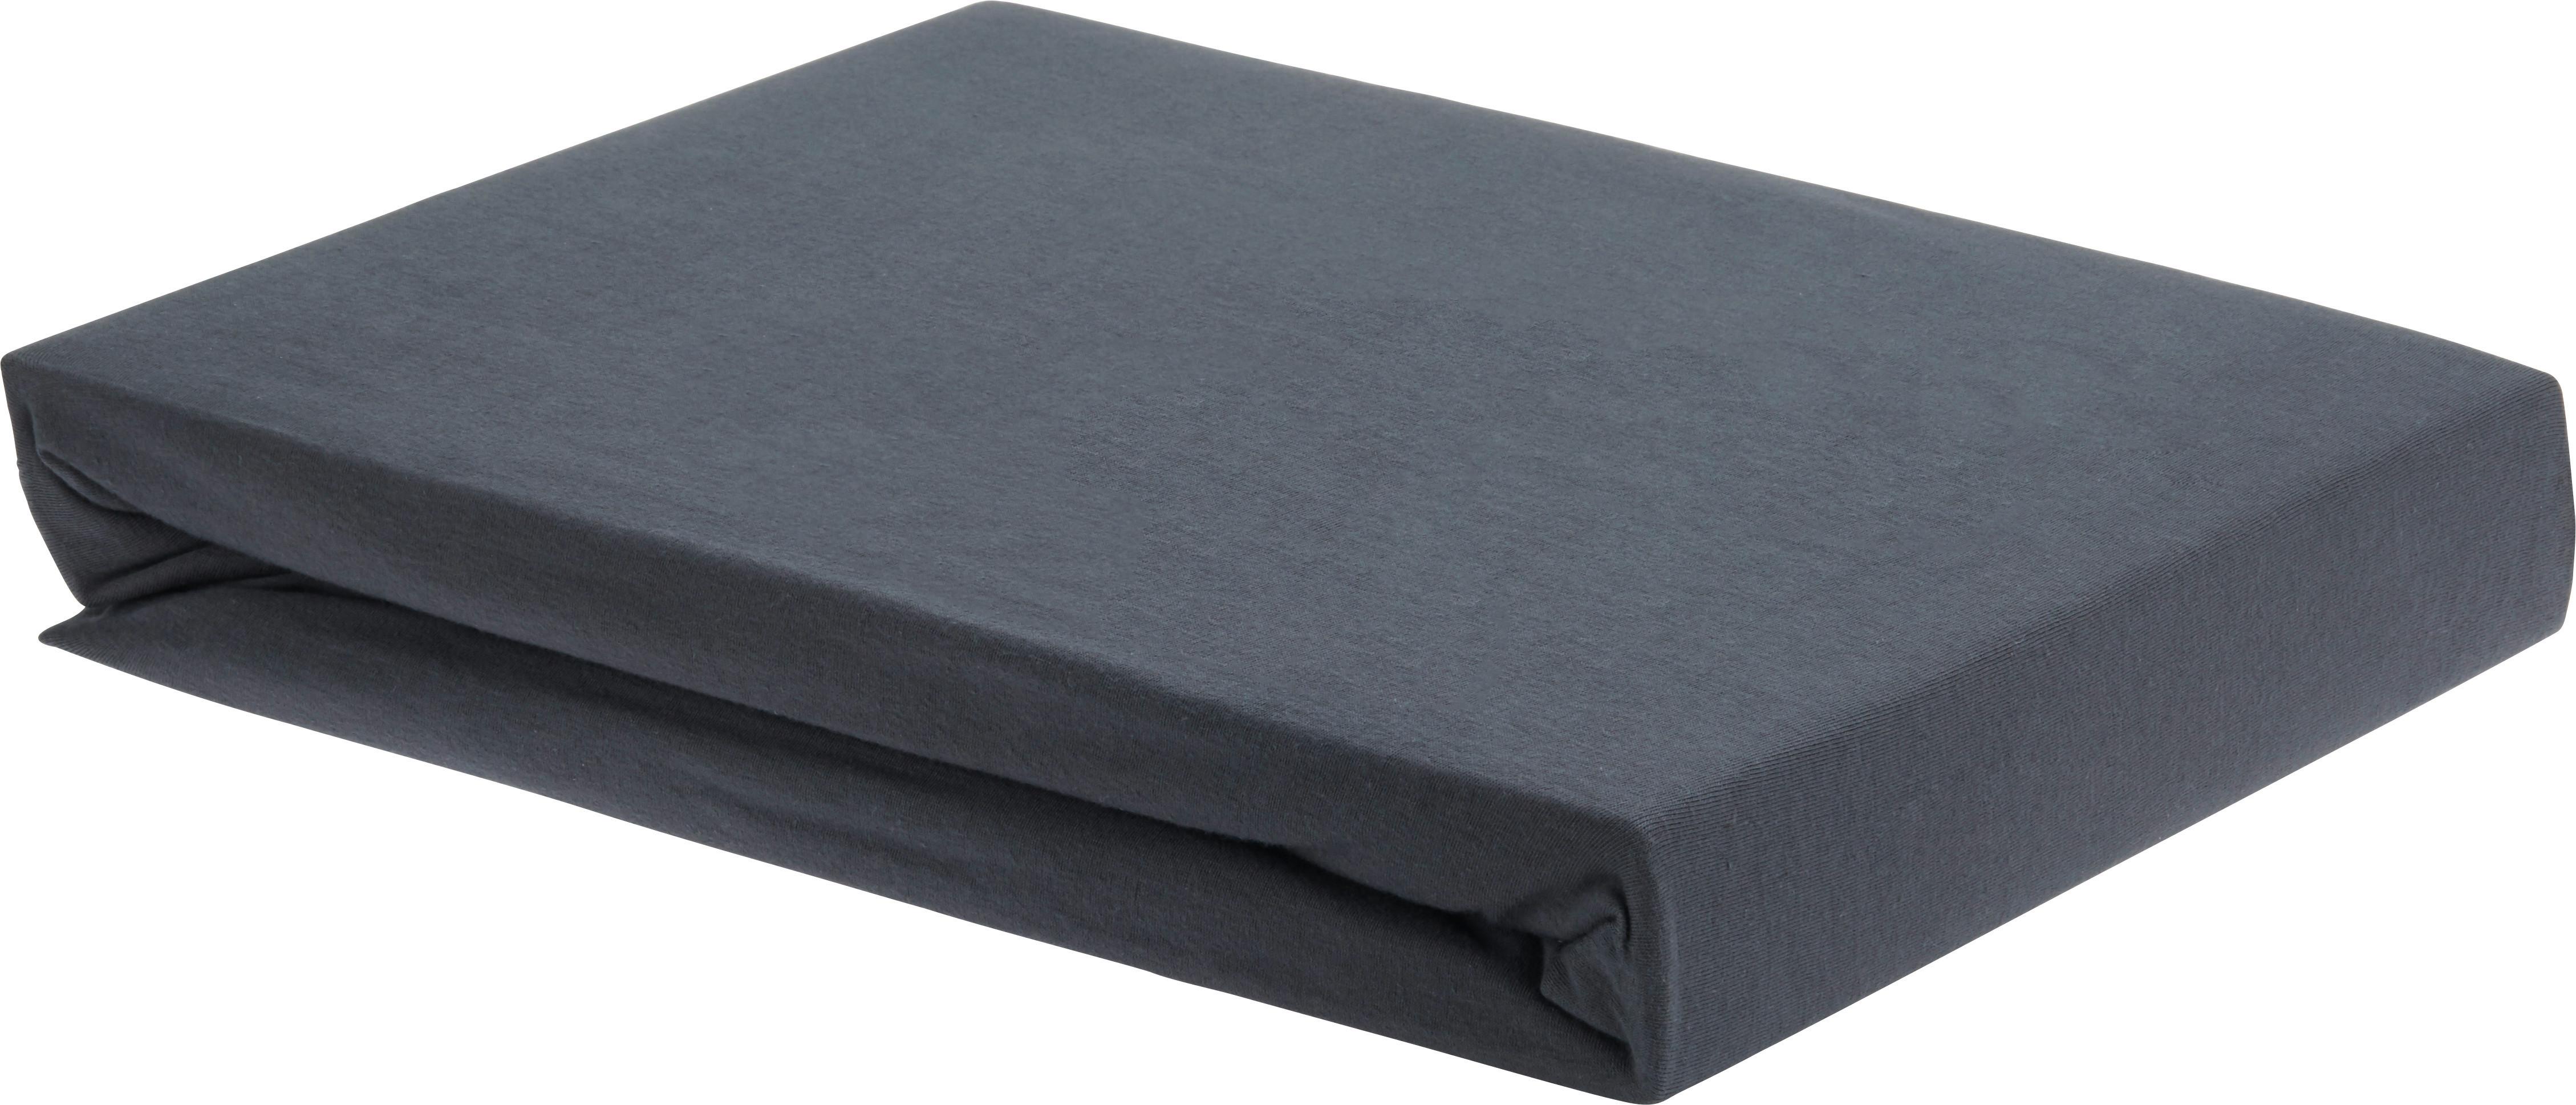 Cearșaf cu elastic Elasthan - antracit, textil (180/200/15cm) - Premium Living